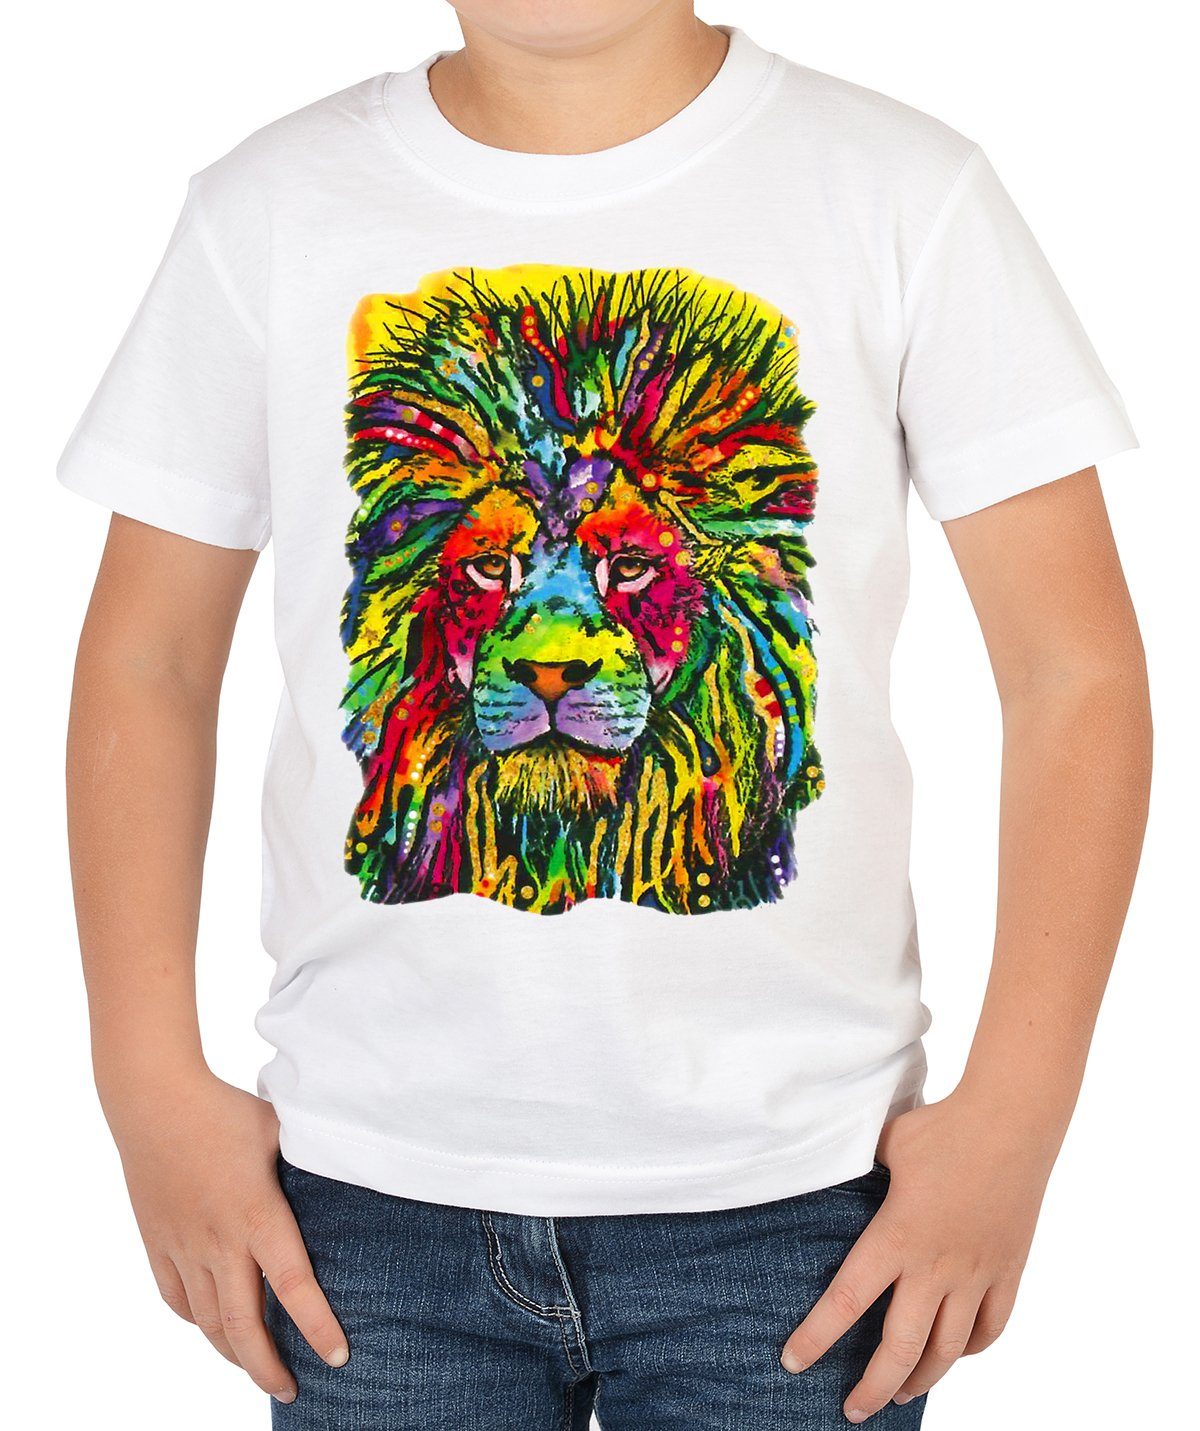 Tini - Löwe Motiv Shirt für Shirts Print-Shirt bunter Löwen Kinder Lion Good Kindershirt :